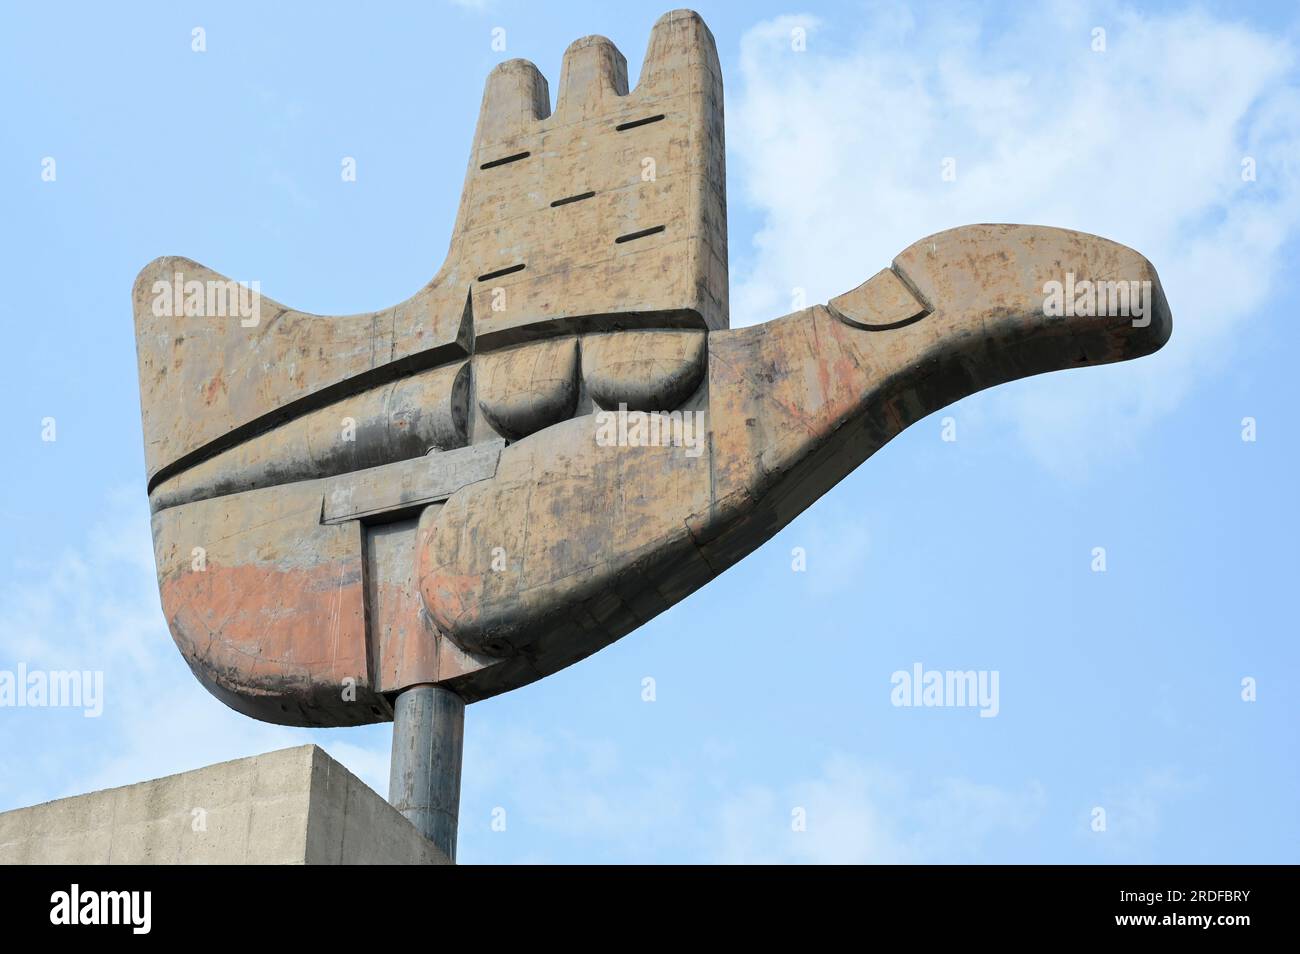 INDE, Chandigarh, le plan directeur de la ville divisée en secteurs a été préparé par l'architecte franco-suisse le Corbusier dans le 1950», secteur 1 Capitole complexe, métal et béton monument la main ouverte conçu par le Corbusier, symbolise «la main à donner et la main à prendre; la paix et la prospérité, et l'unité de l'humanité" Banque D'Images